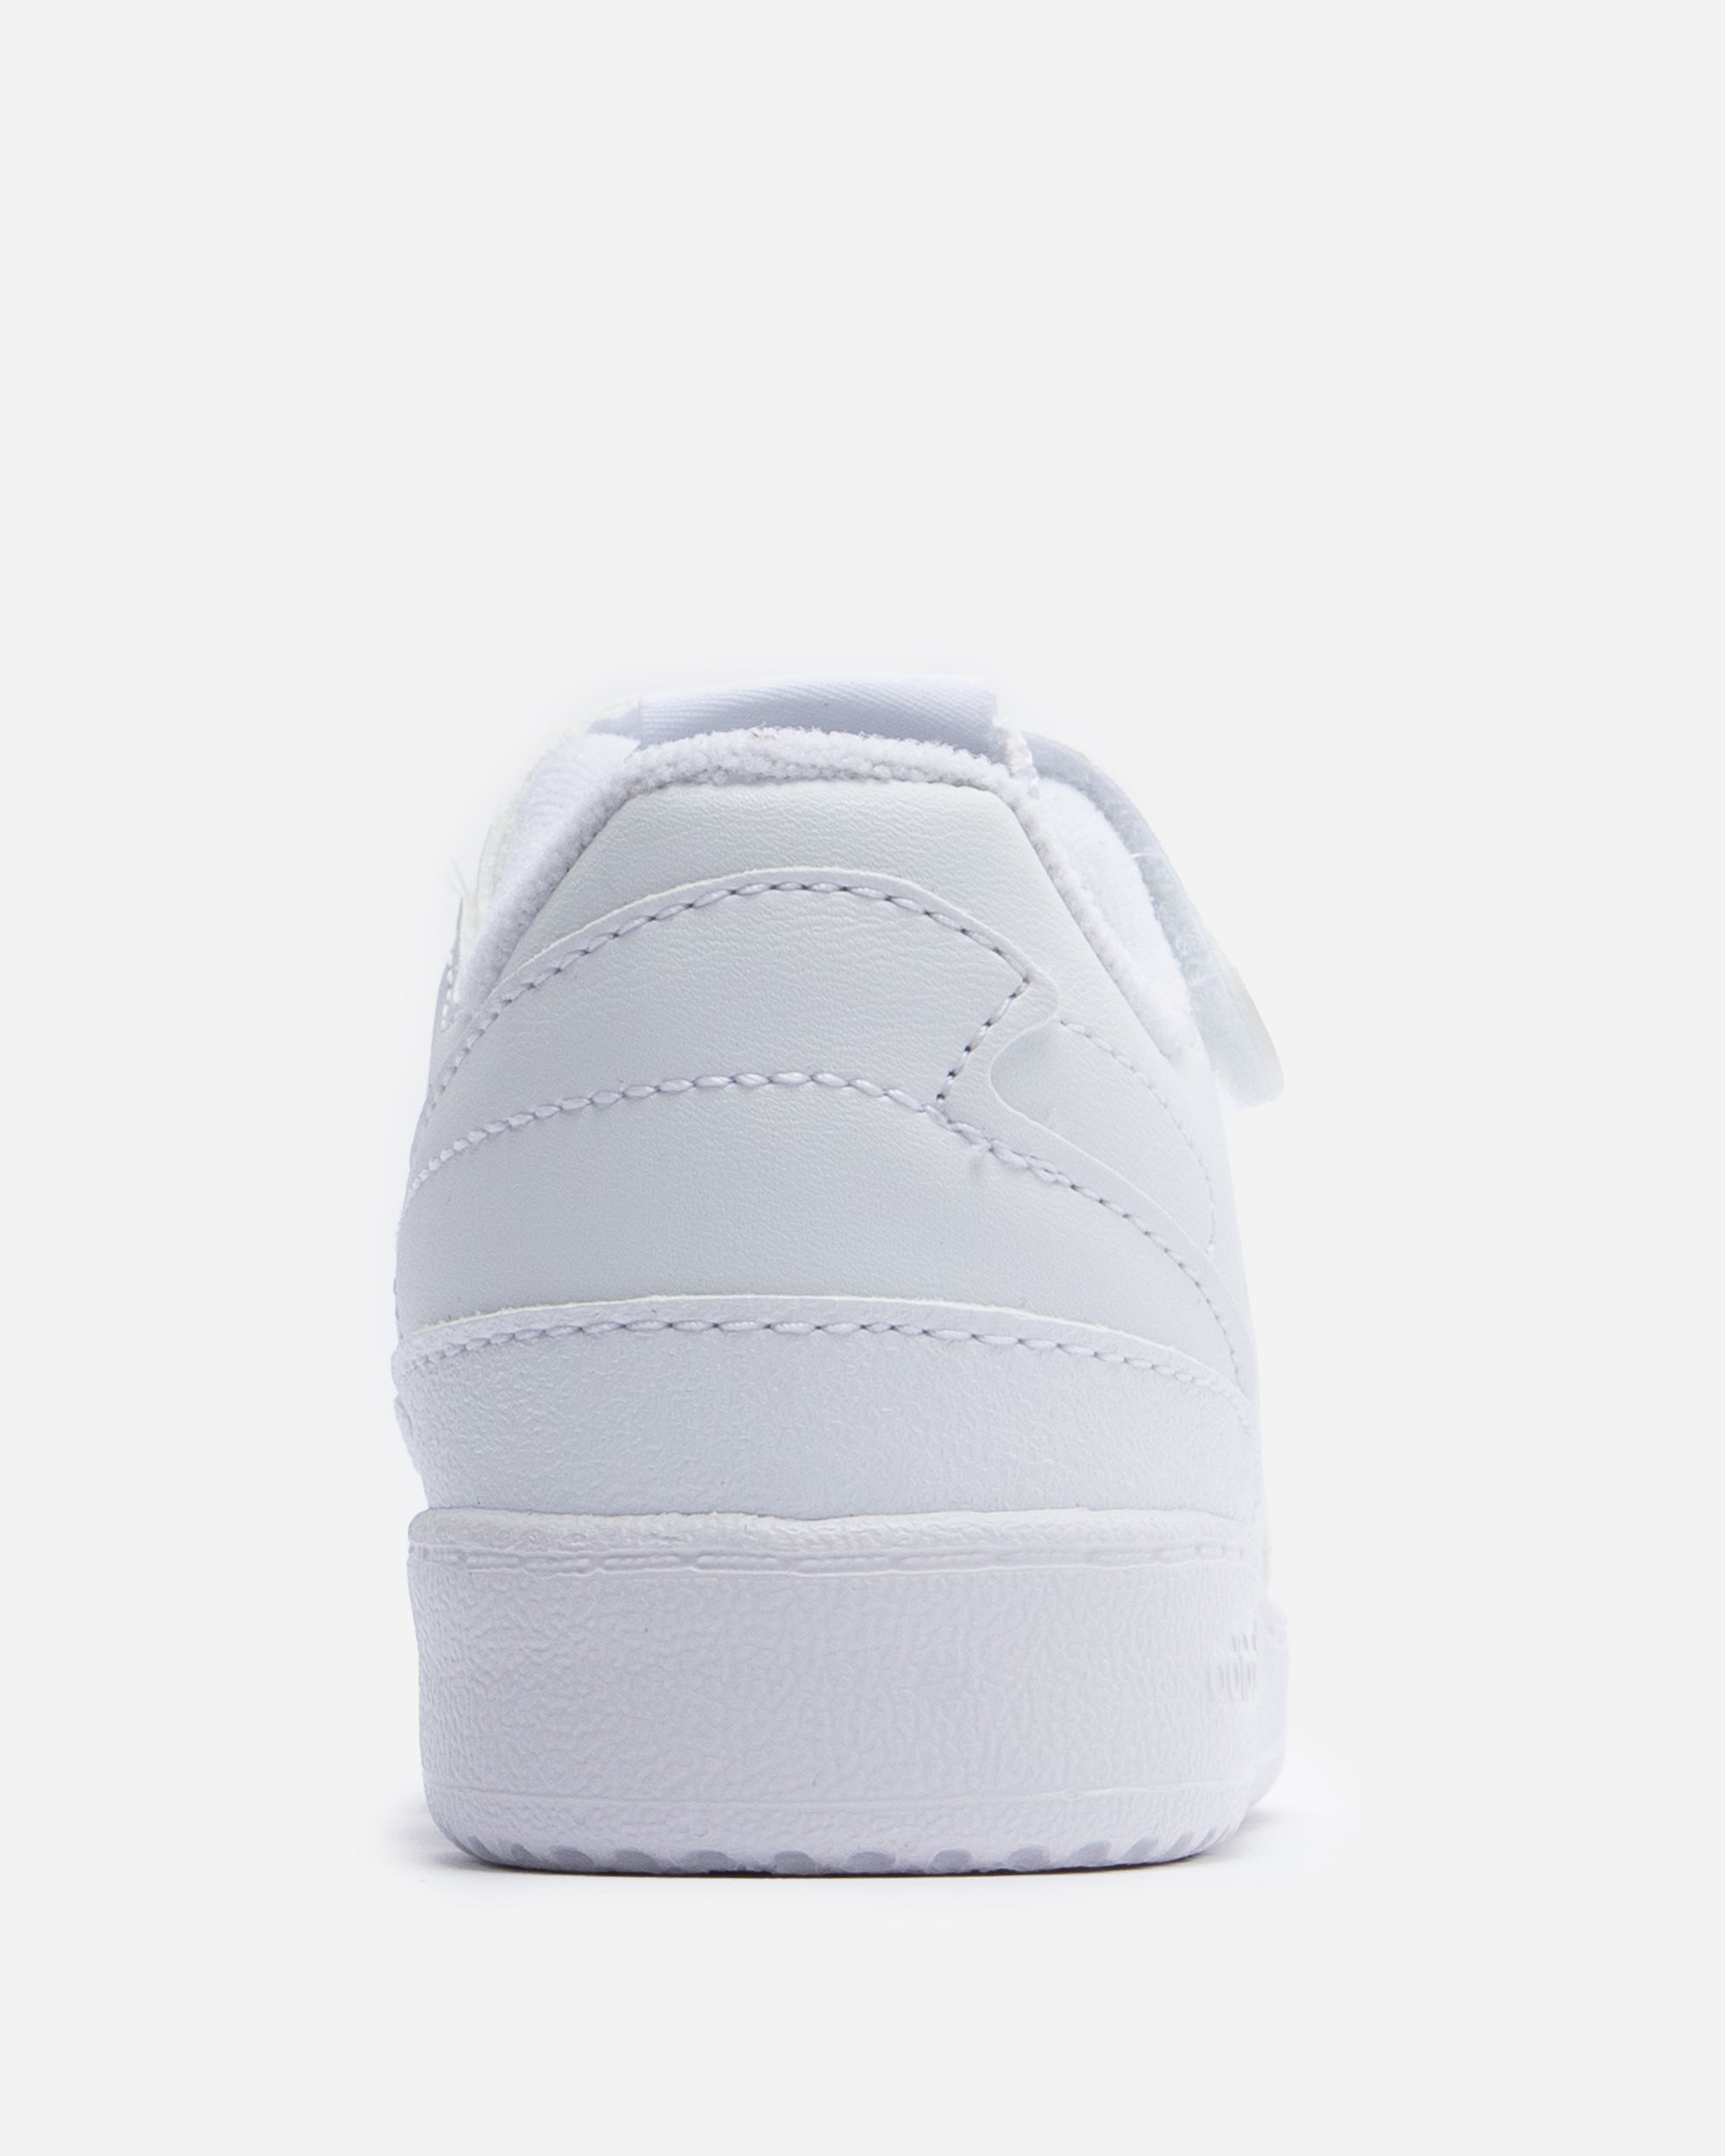 Adidas Ori Forum Low (Toddler) White FY7989